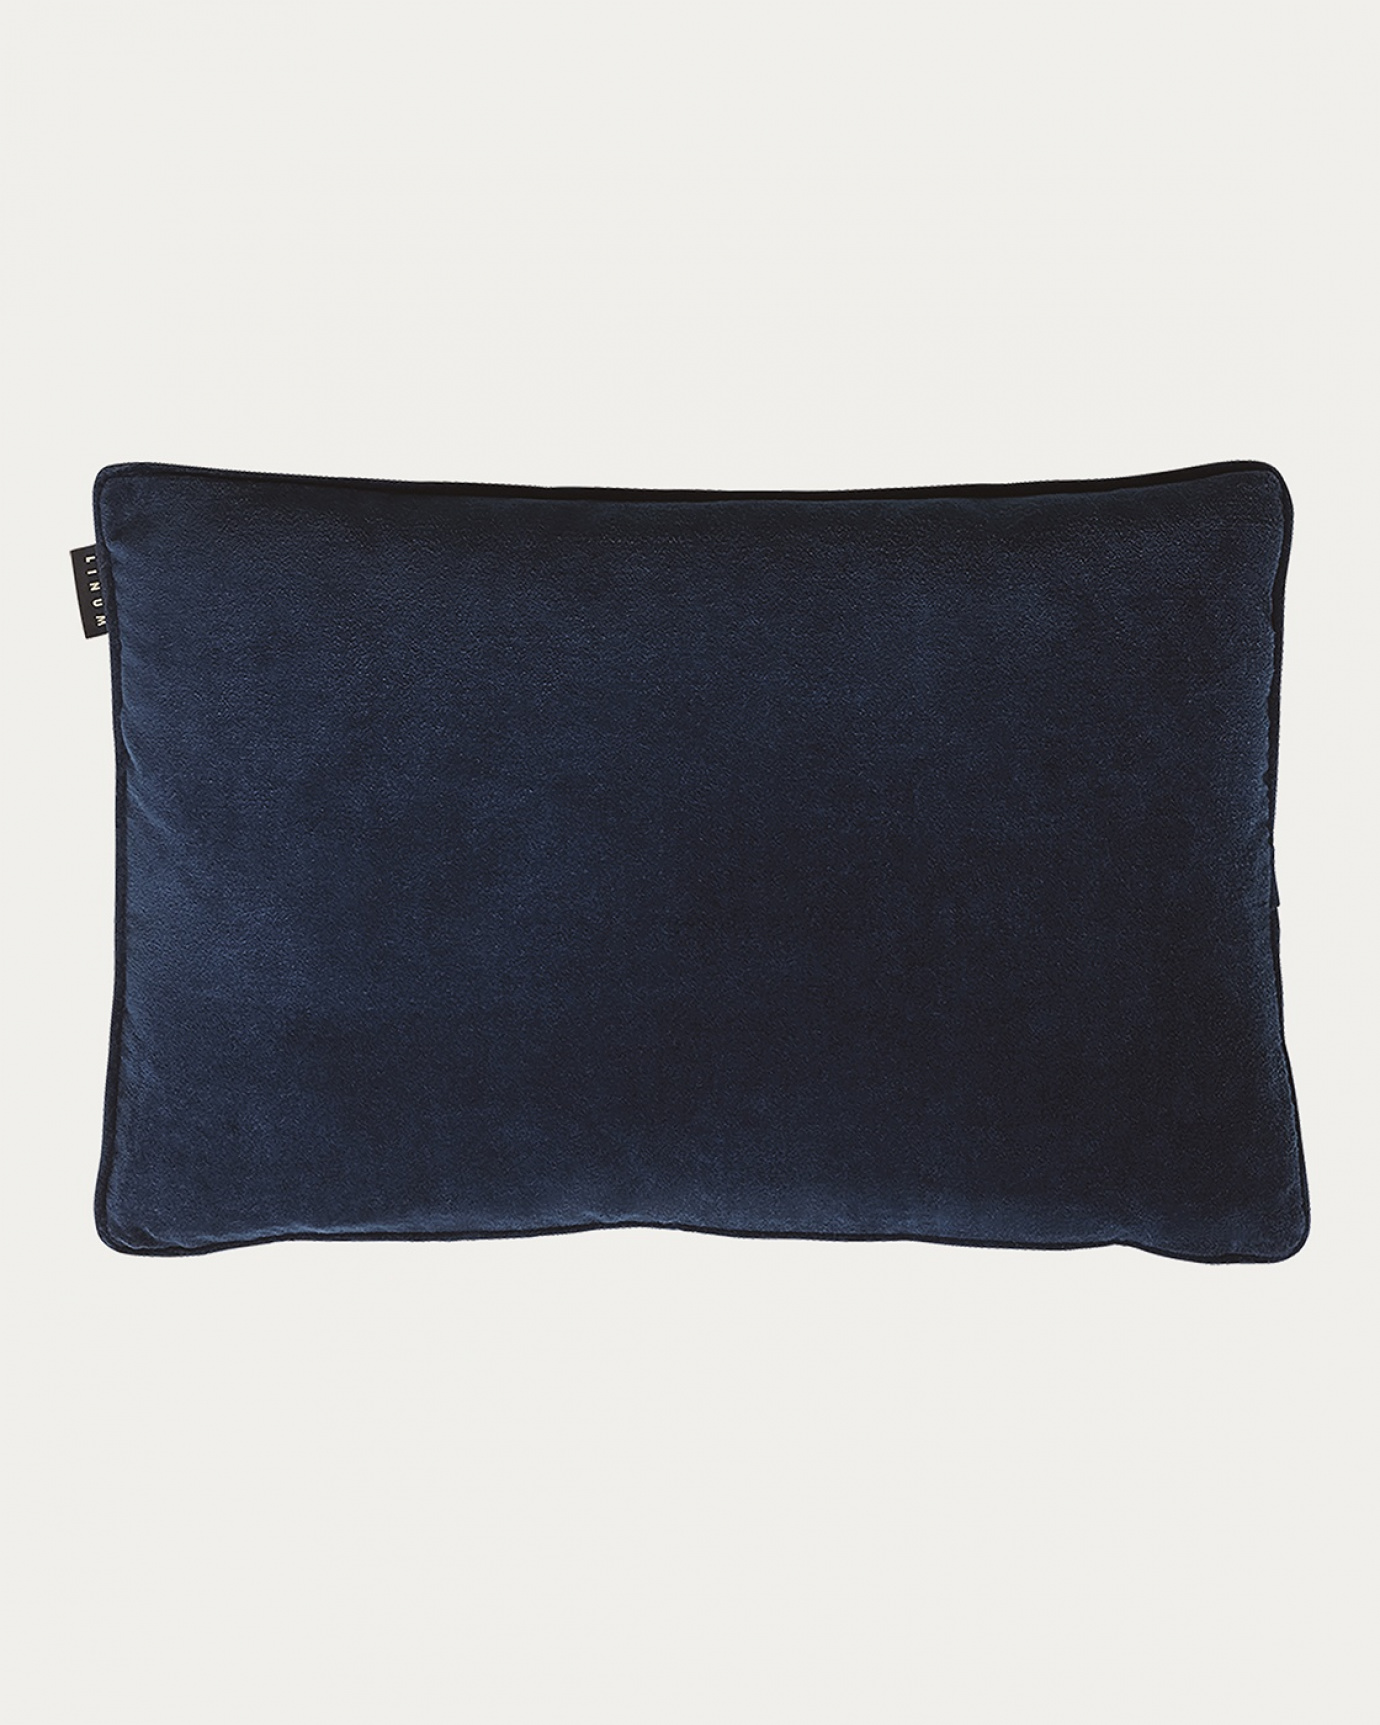 Produktbild tintenblau PAOLO Kissenhülle aus weichem Baumwollsamt von LINUM DESIGN. Größe 40x60 cm.